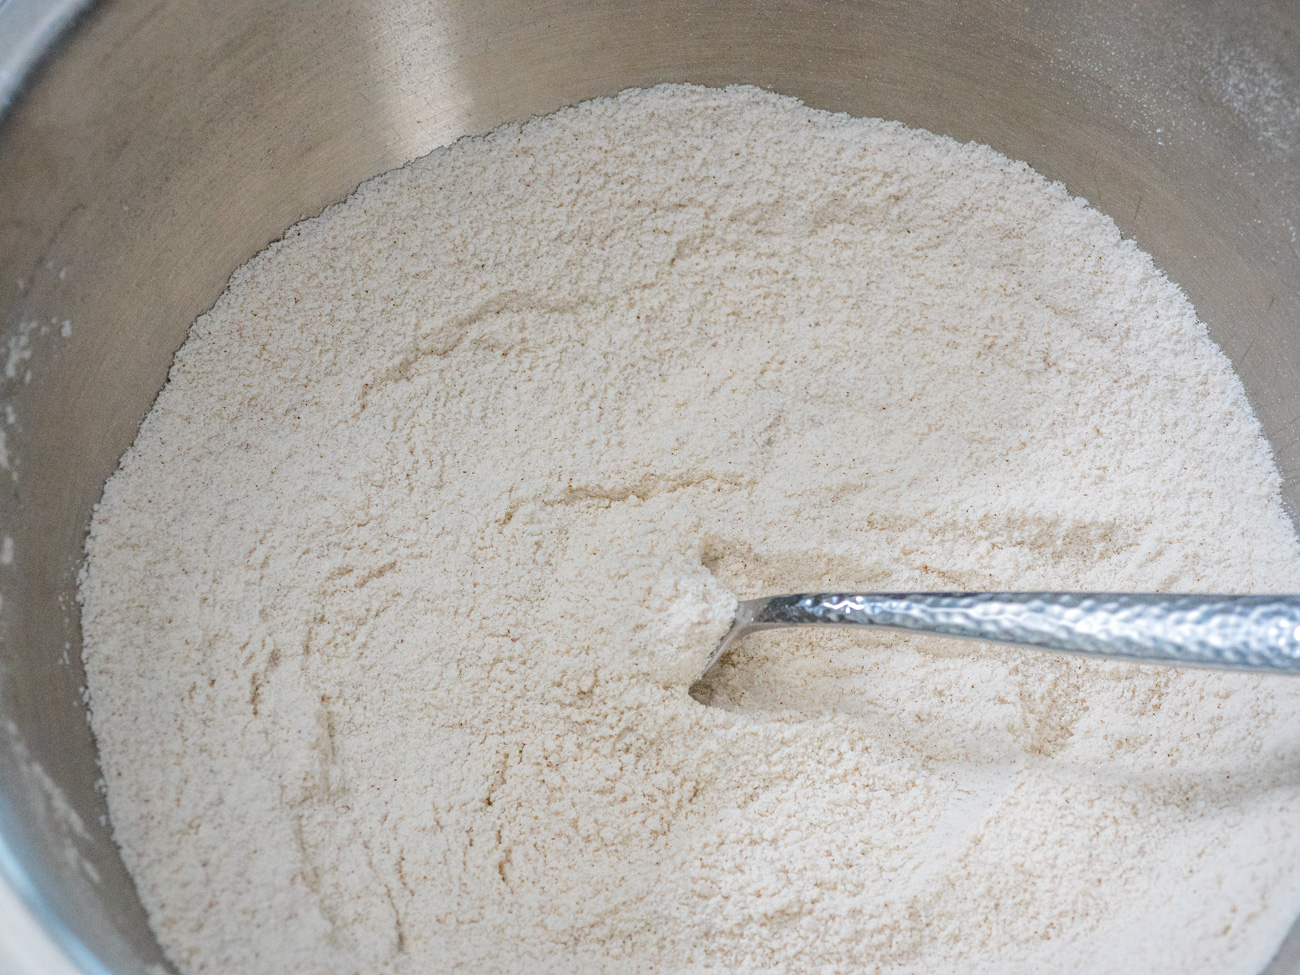 numa tigela grande, misture farinha, açúcar, fermento em pó, bicarbonato de sódio, sal e canela.